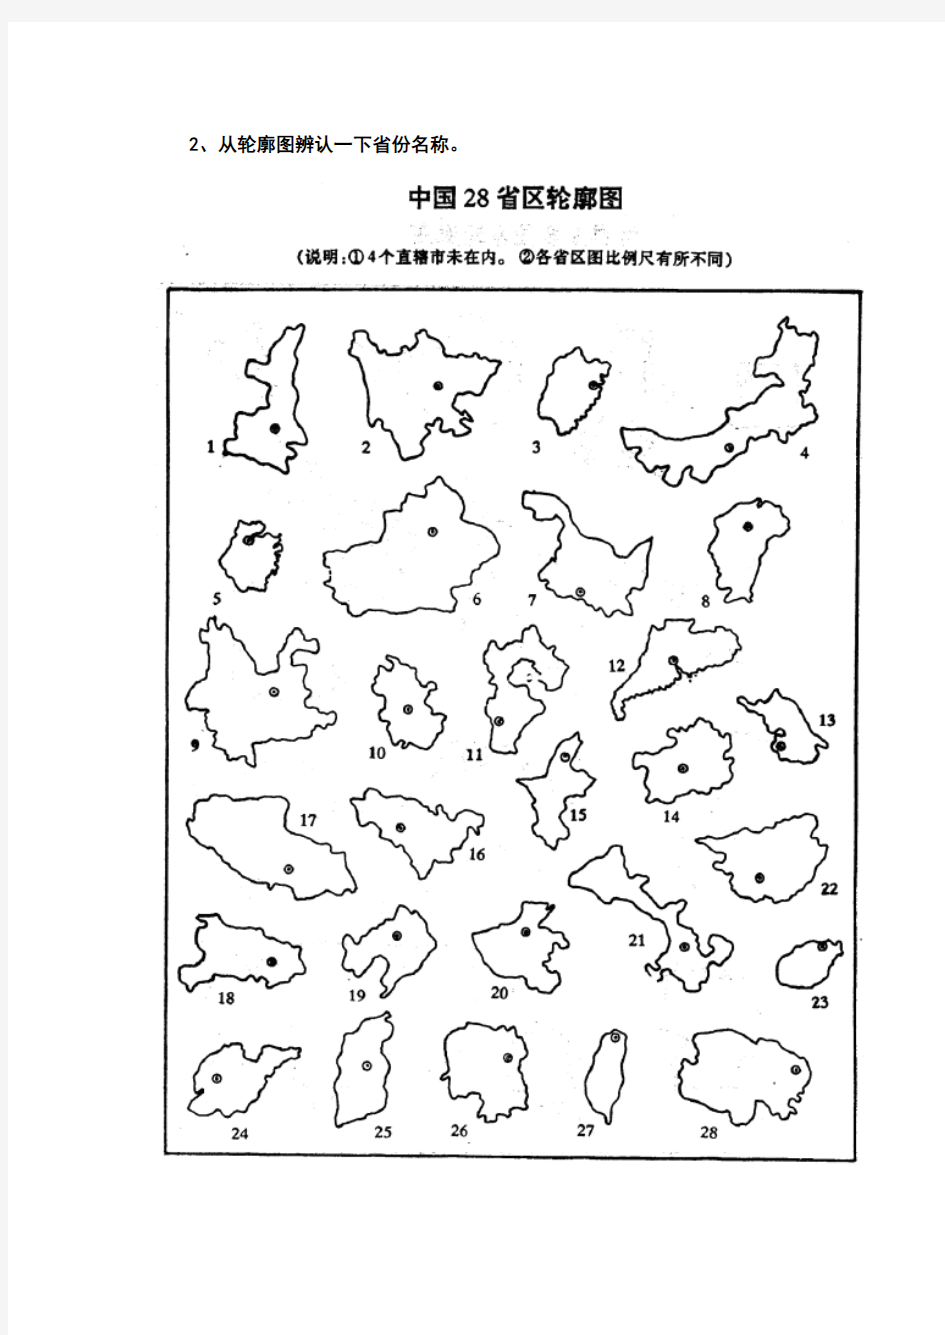 中国地理空白图(政区、分省轮廓、地形、铁路空白图)-(3)[1]